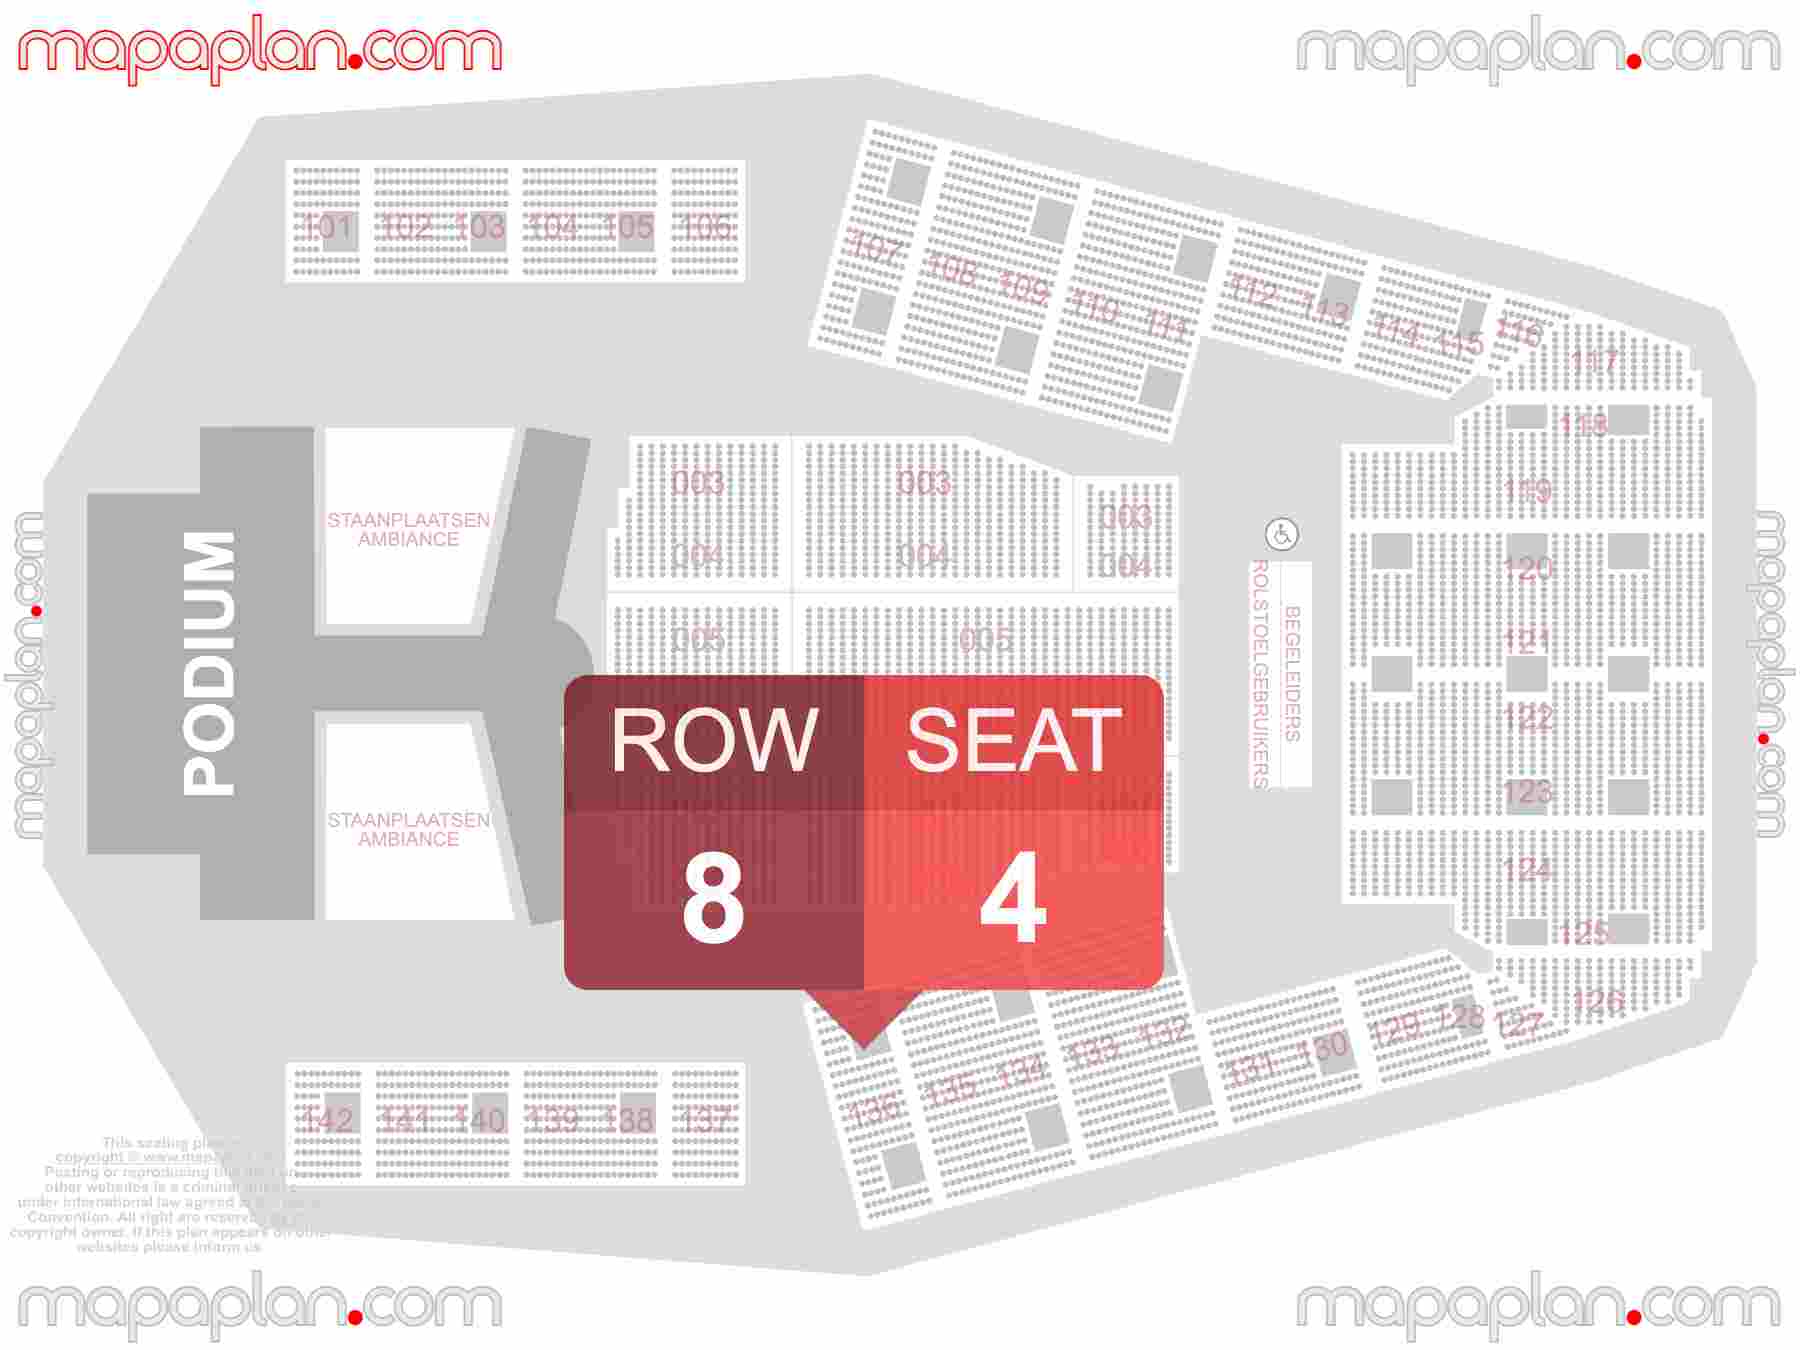 Hasselt Trixxo Arena seating plan Concert plattegrond met zitplaatsen nummering en rijnummers beste plaatsen blokken zaalplan - detailed seat numbers and row numbering plan with interactive map map layout